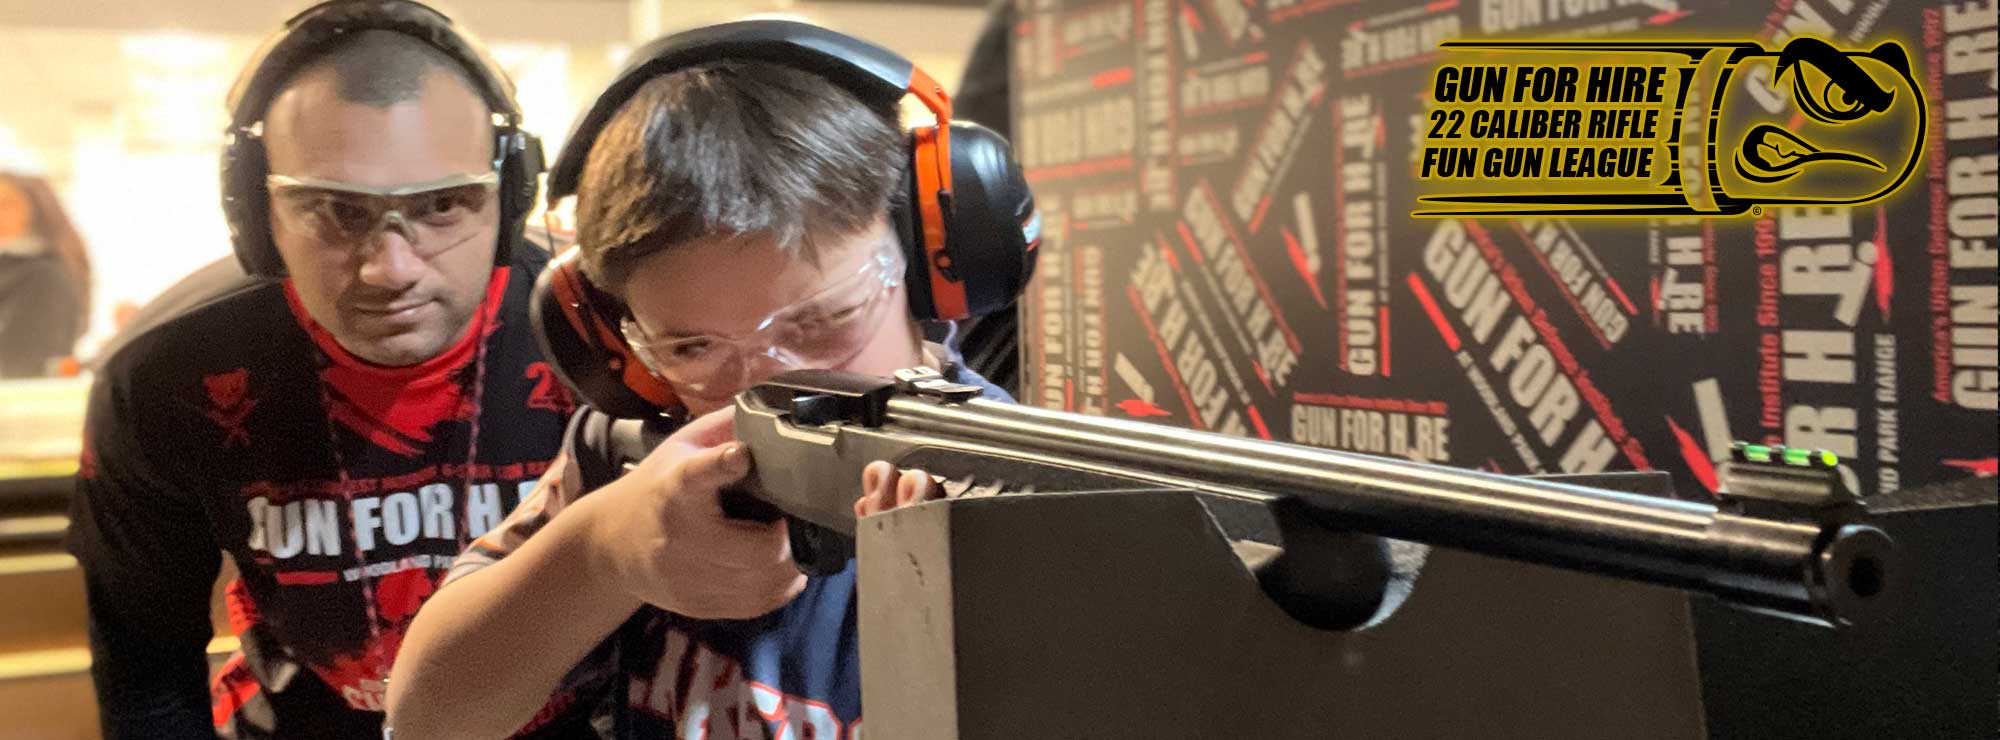 22 fun gun leage kids shooting - Gun For Hire 22lr league